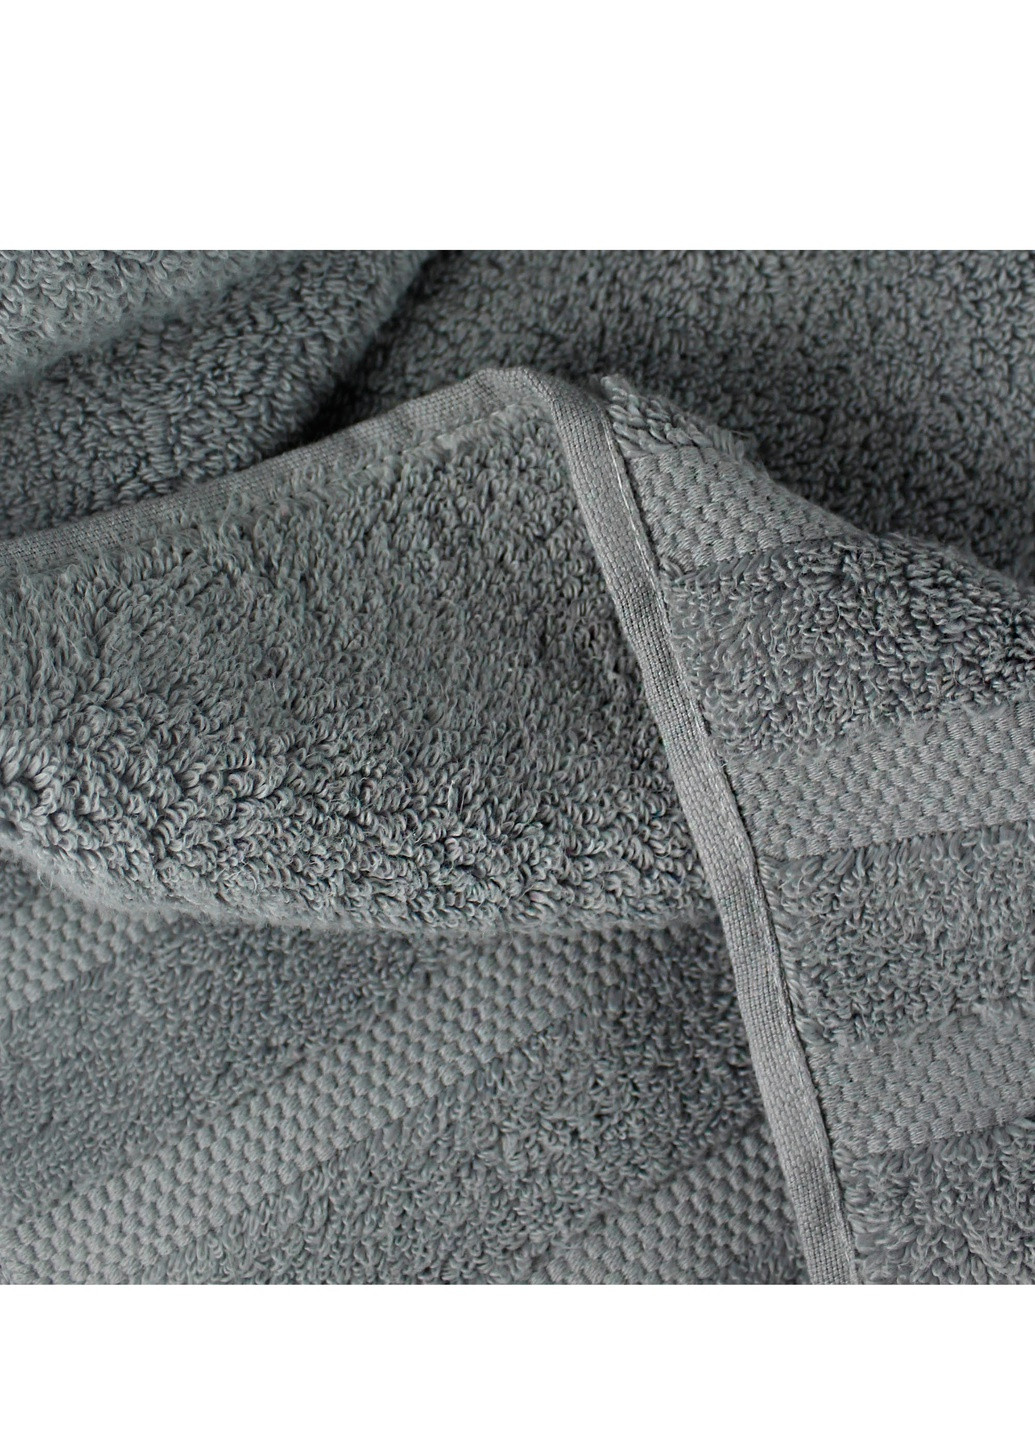 Bulgaria-Tex полотенце махровое oslo, microcotton, жаккардовое, с бордюром, серое, размер 50x90 cm серый производство - Болгария